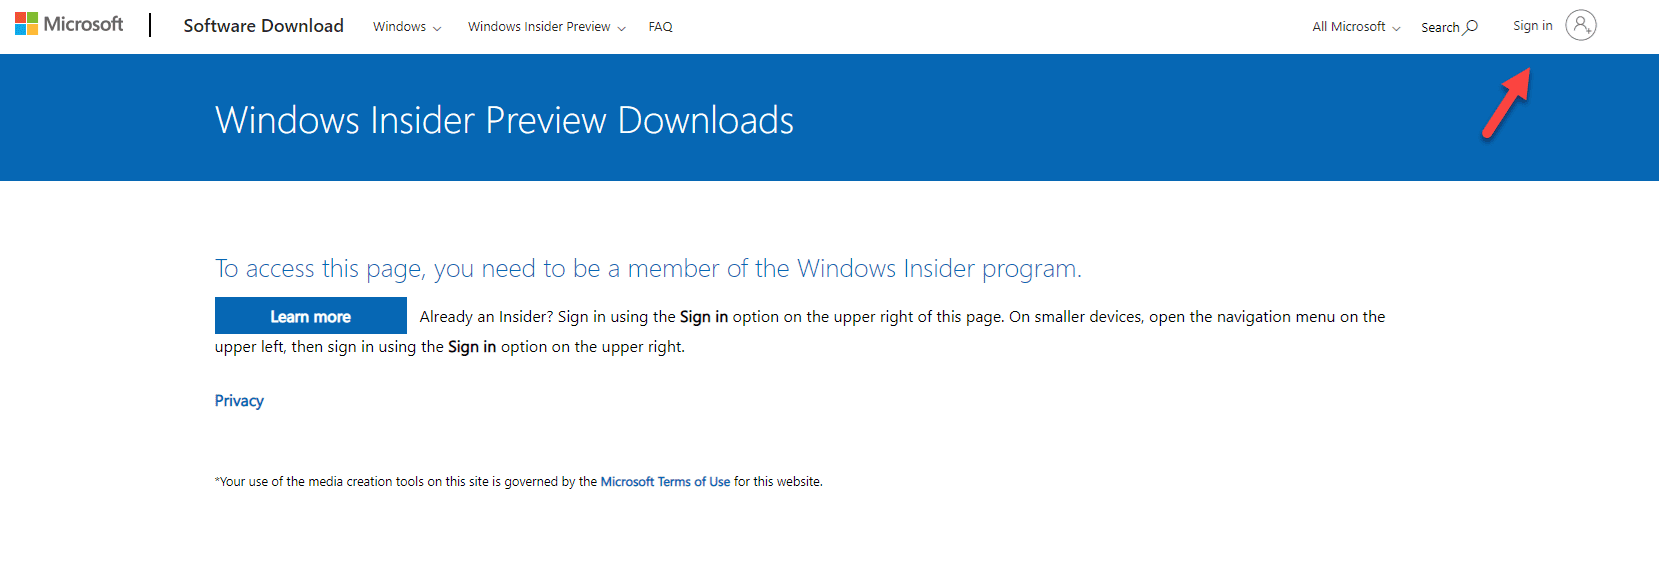 Download do Windows Server 2022